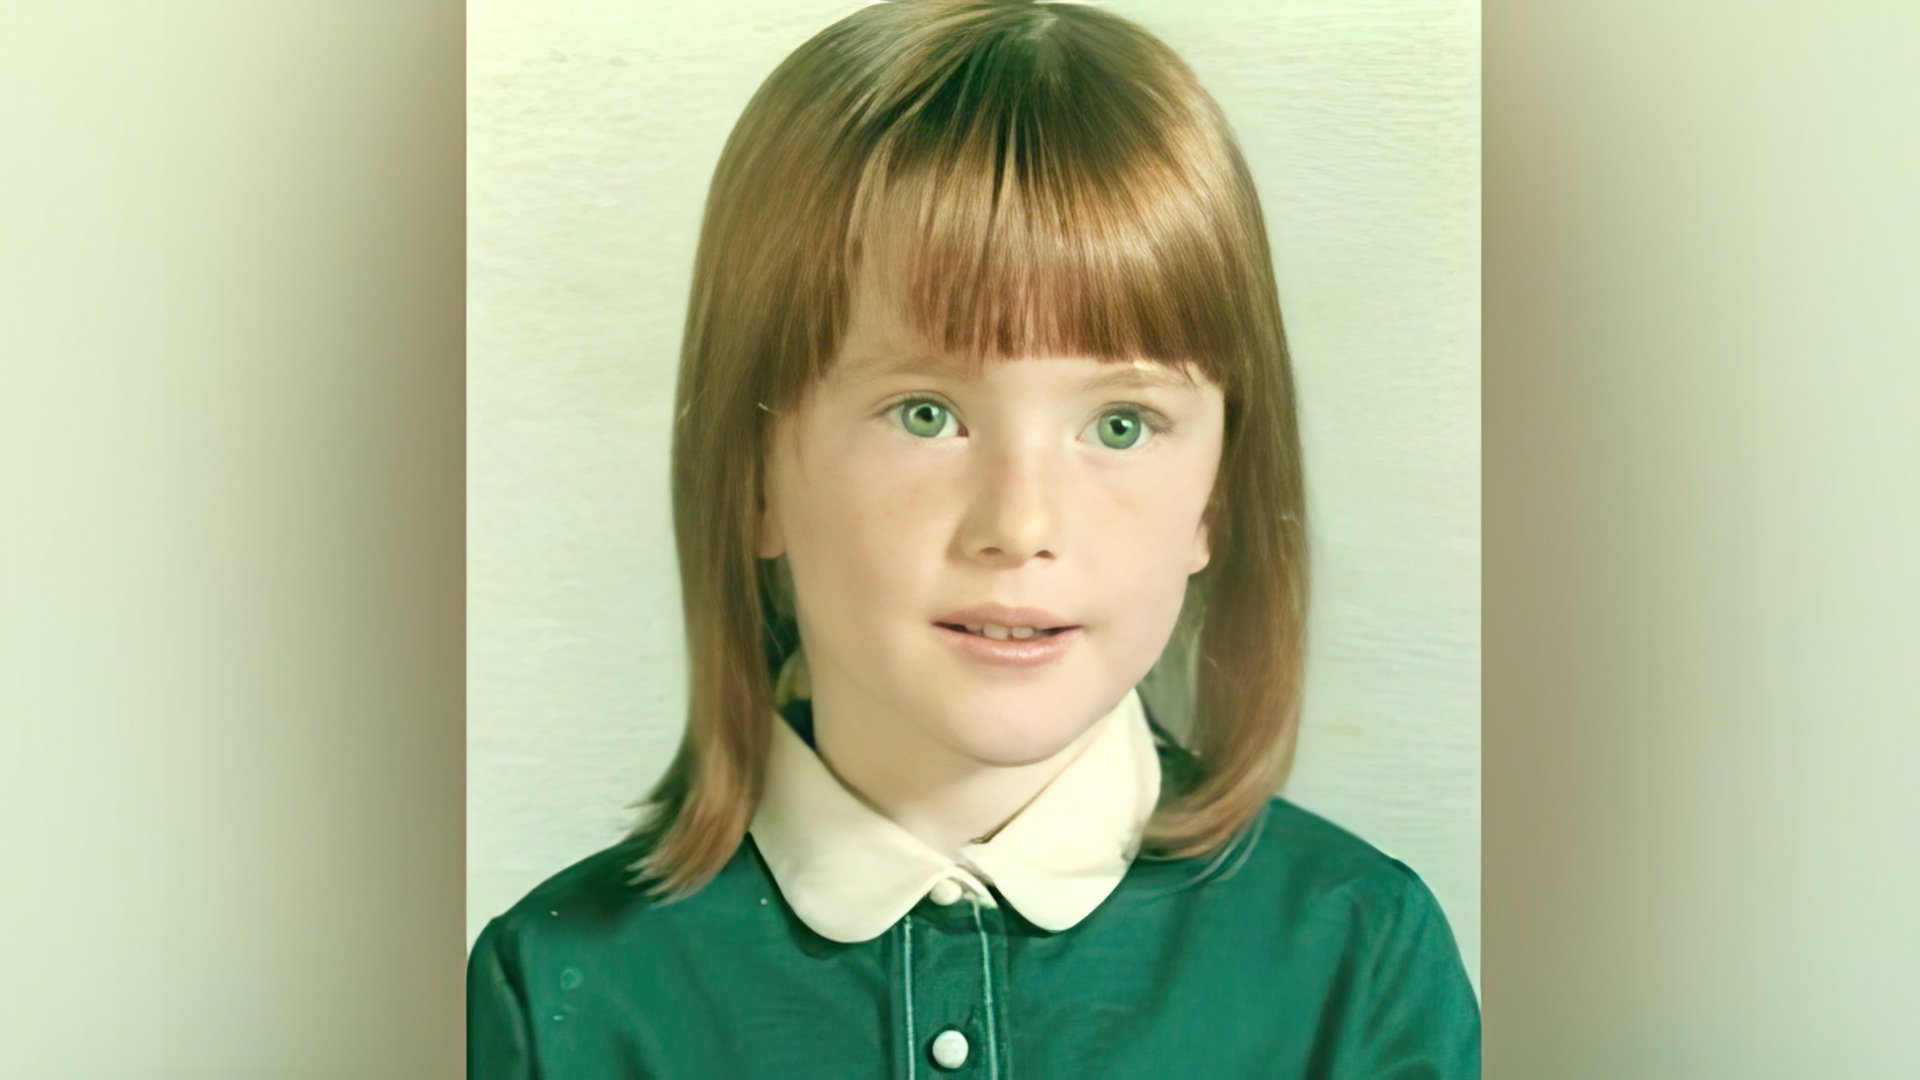 Julianne Moore in her childhood